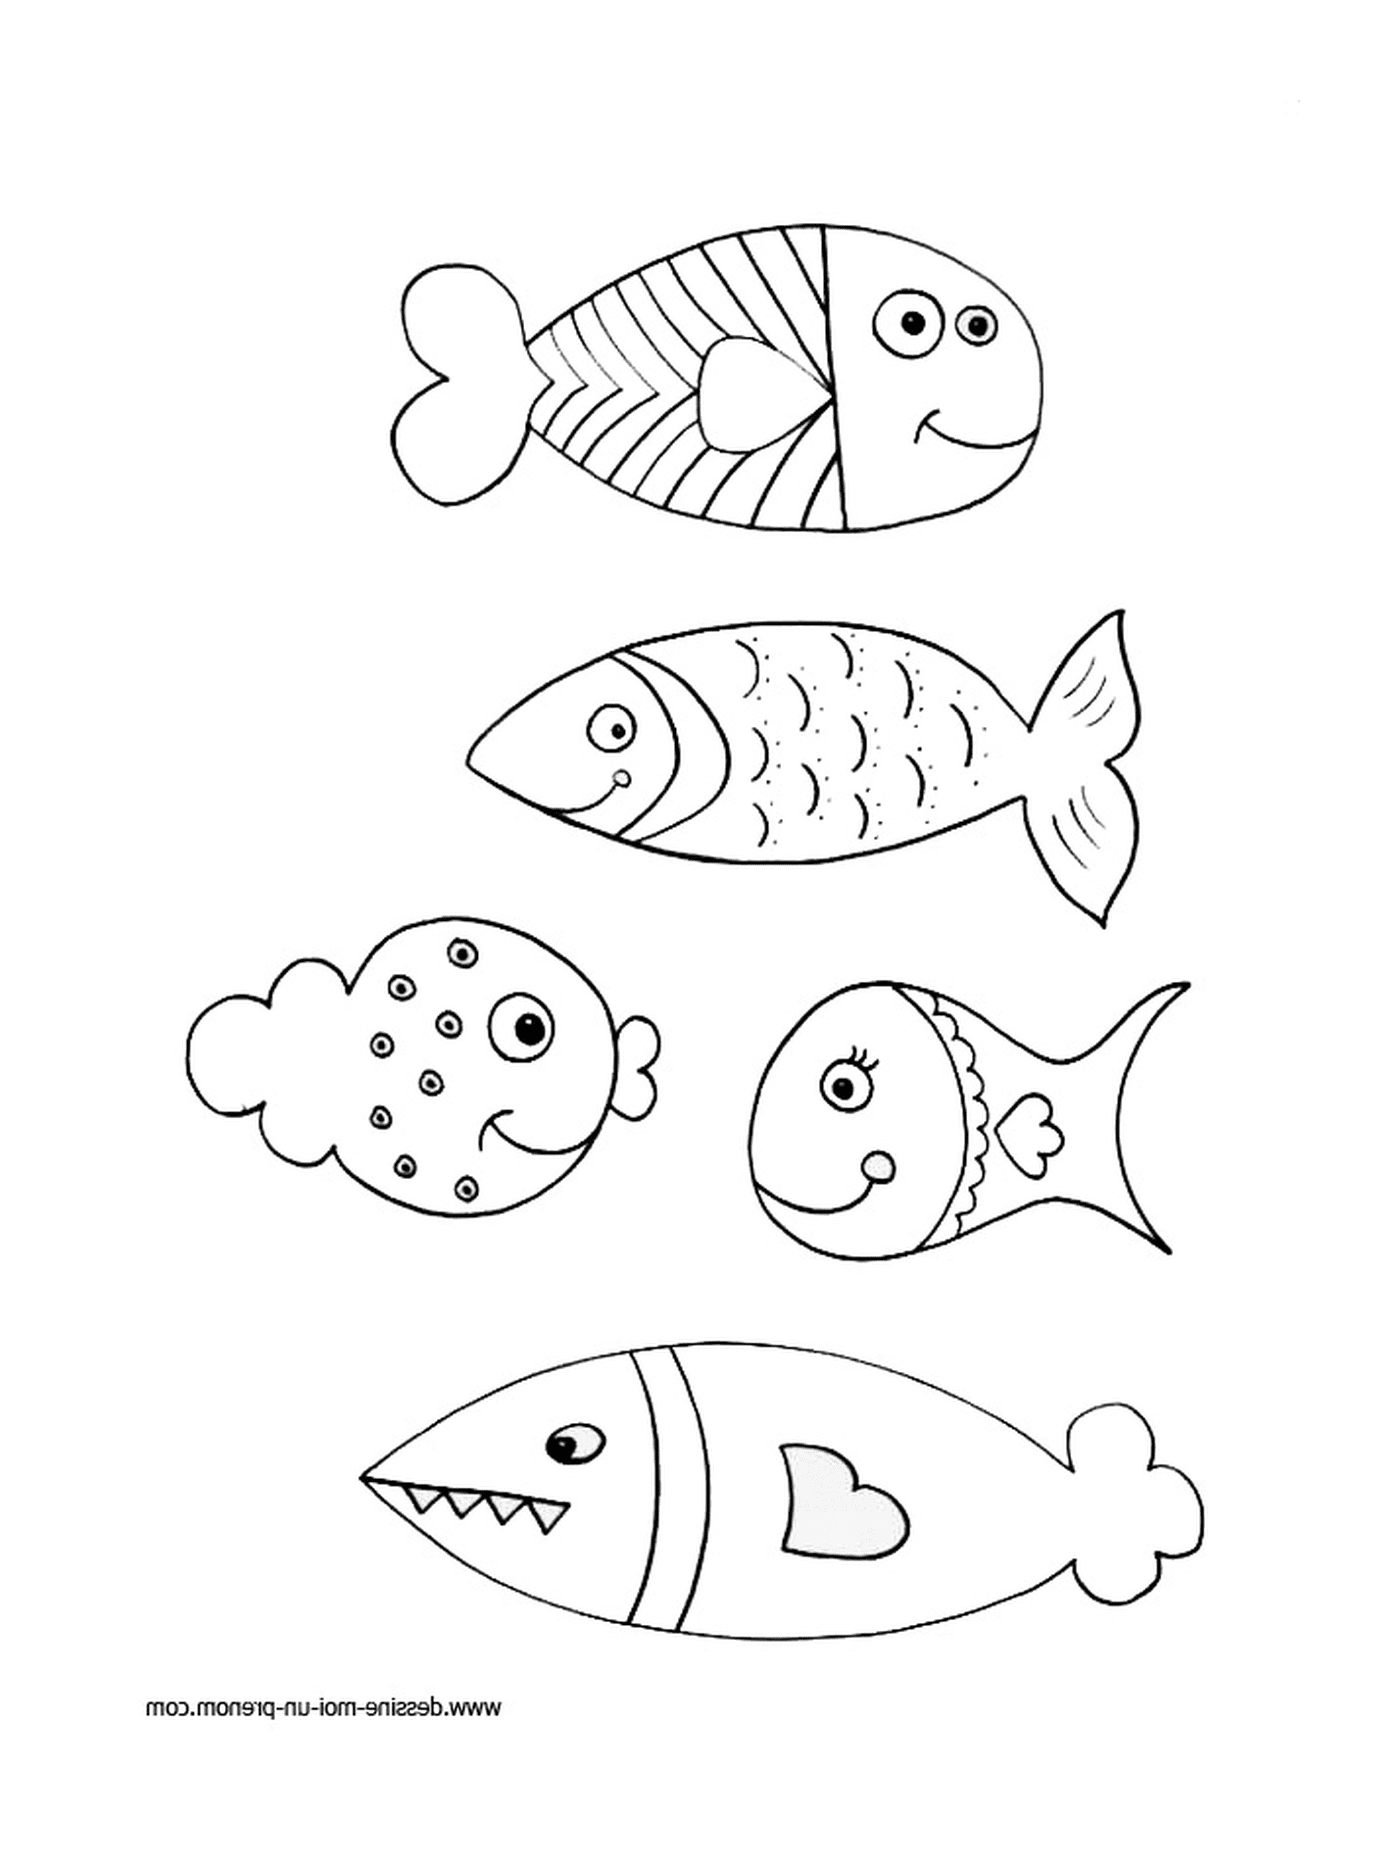   Groupe de poissons alignés 